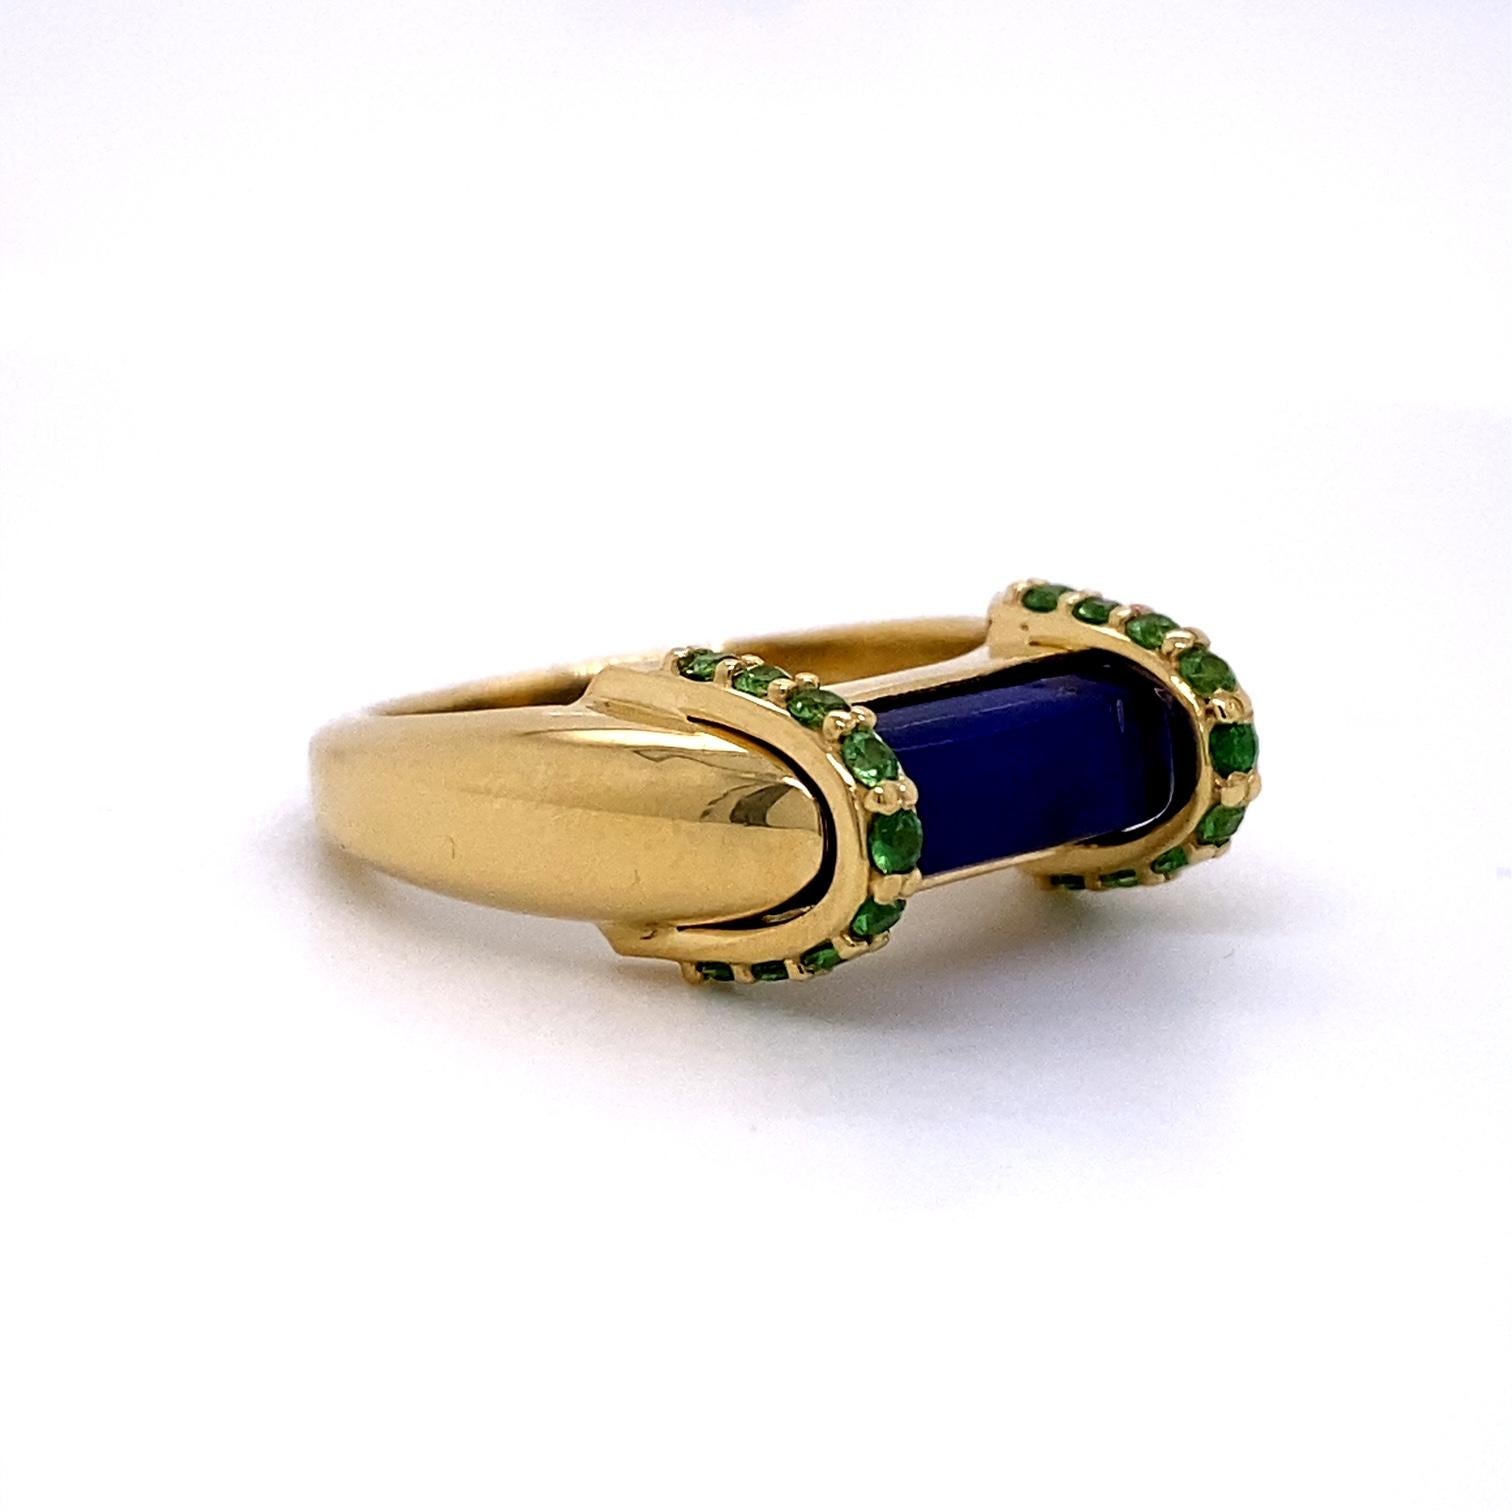 Ein Ring aus 18er Gelbgold, besetzt mit einem Lapislazuli von 2,68 Karat und zwei Bändern mit 1,6 mm großen Tsavorit-Granaten von insgesamt 0,36 Karat. Ring Größe 7. Dieser Ring wurde von llyn strong hergestellt und entworfen.